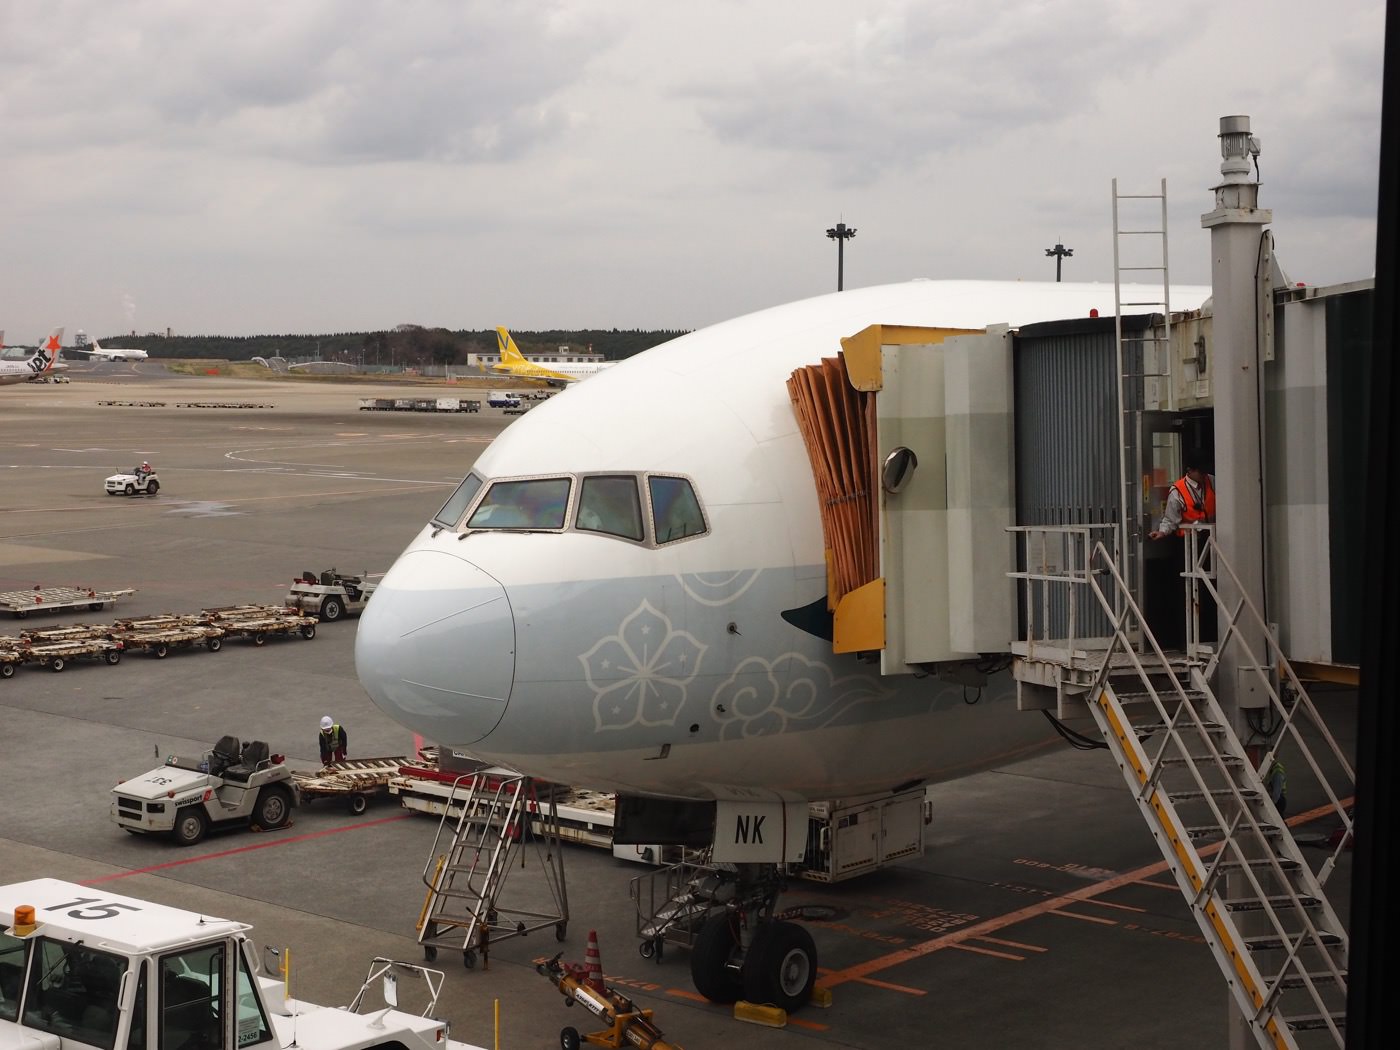 飛行紀錄 國泰航空 CX451 東京成田 - 台北 777-300 商務艙紀錄 - 一口冒險 Bitesized Adventure